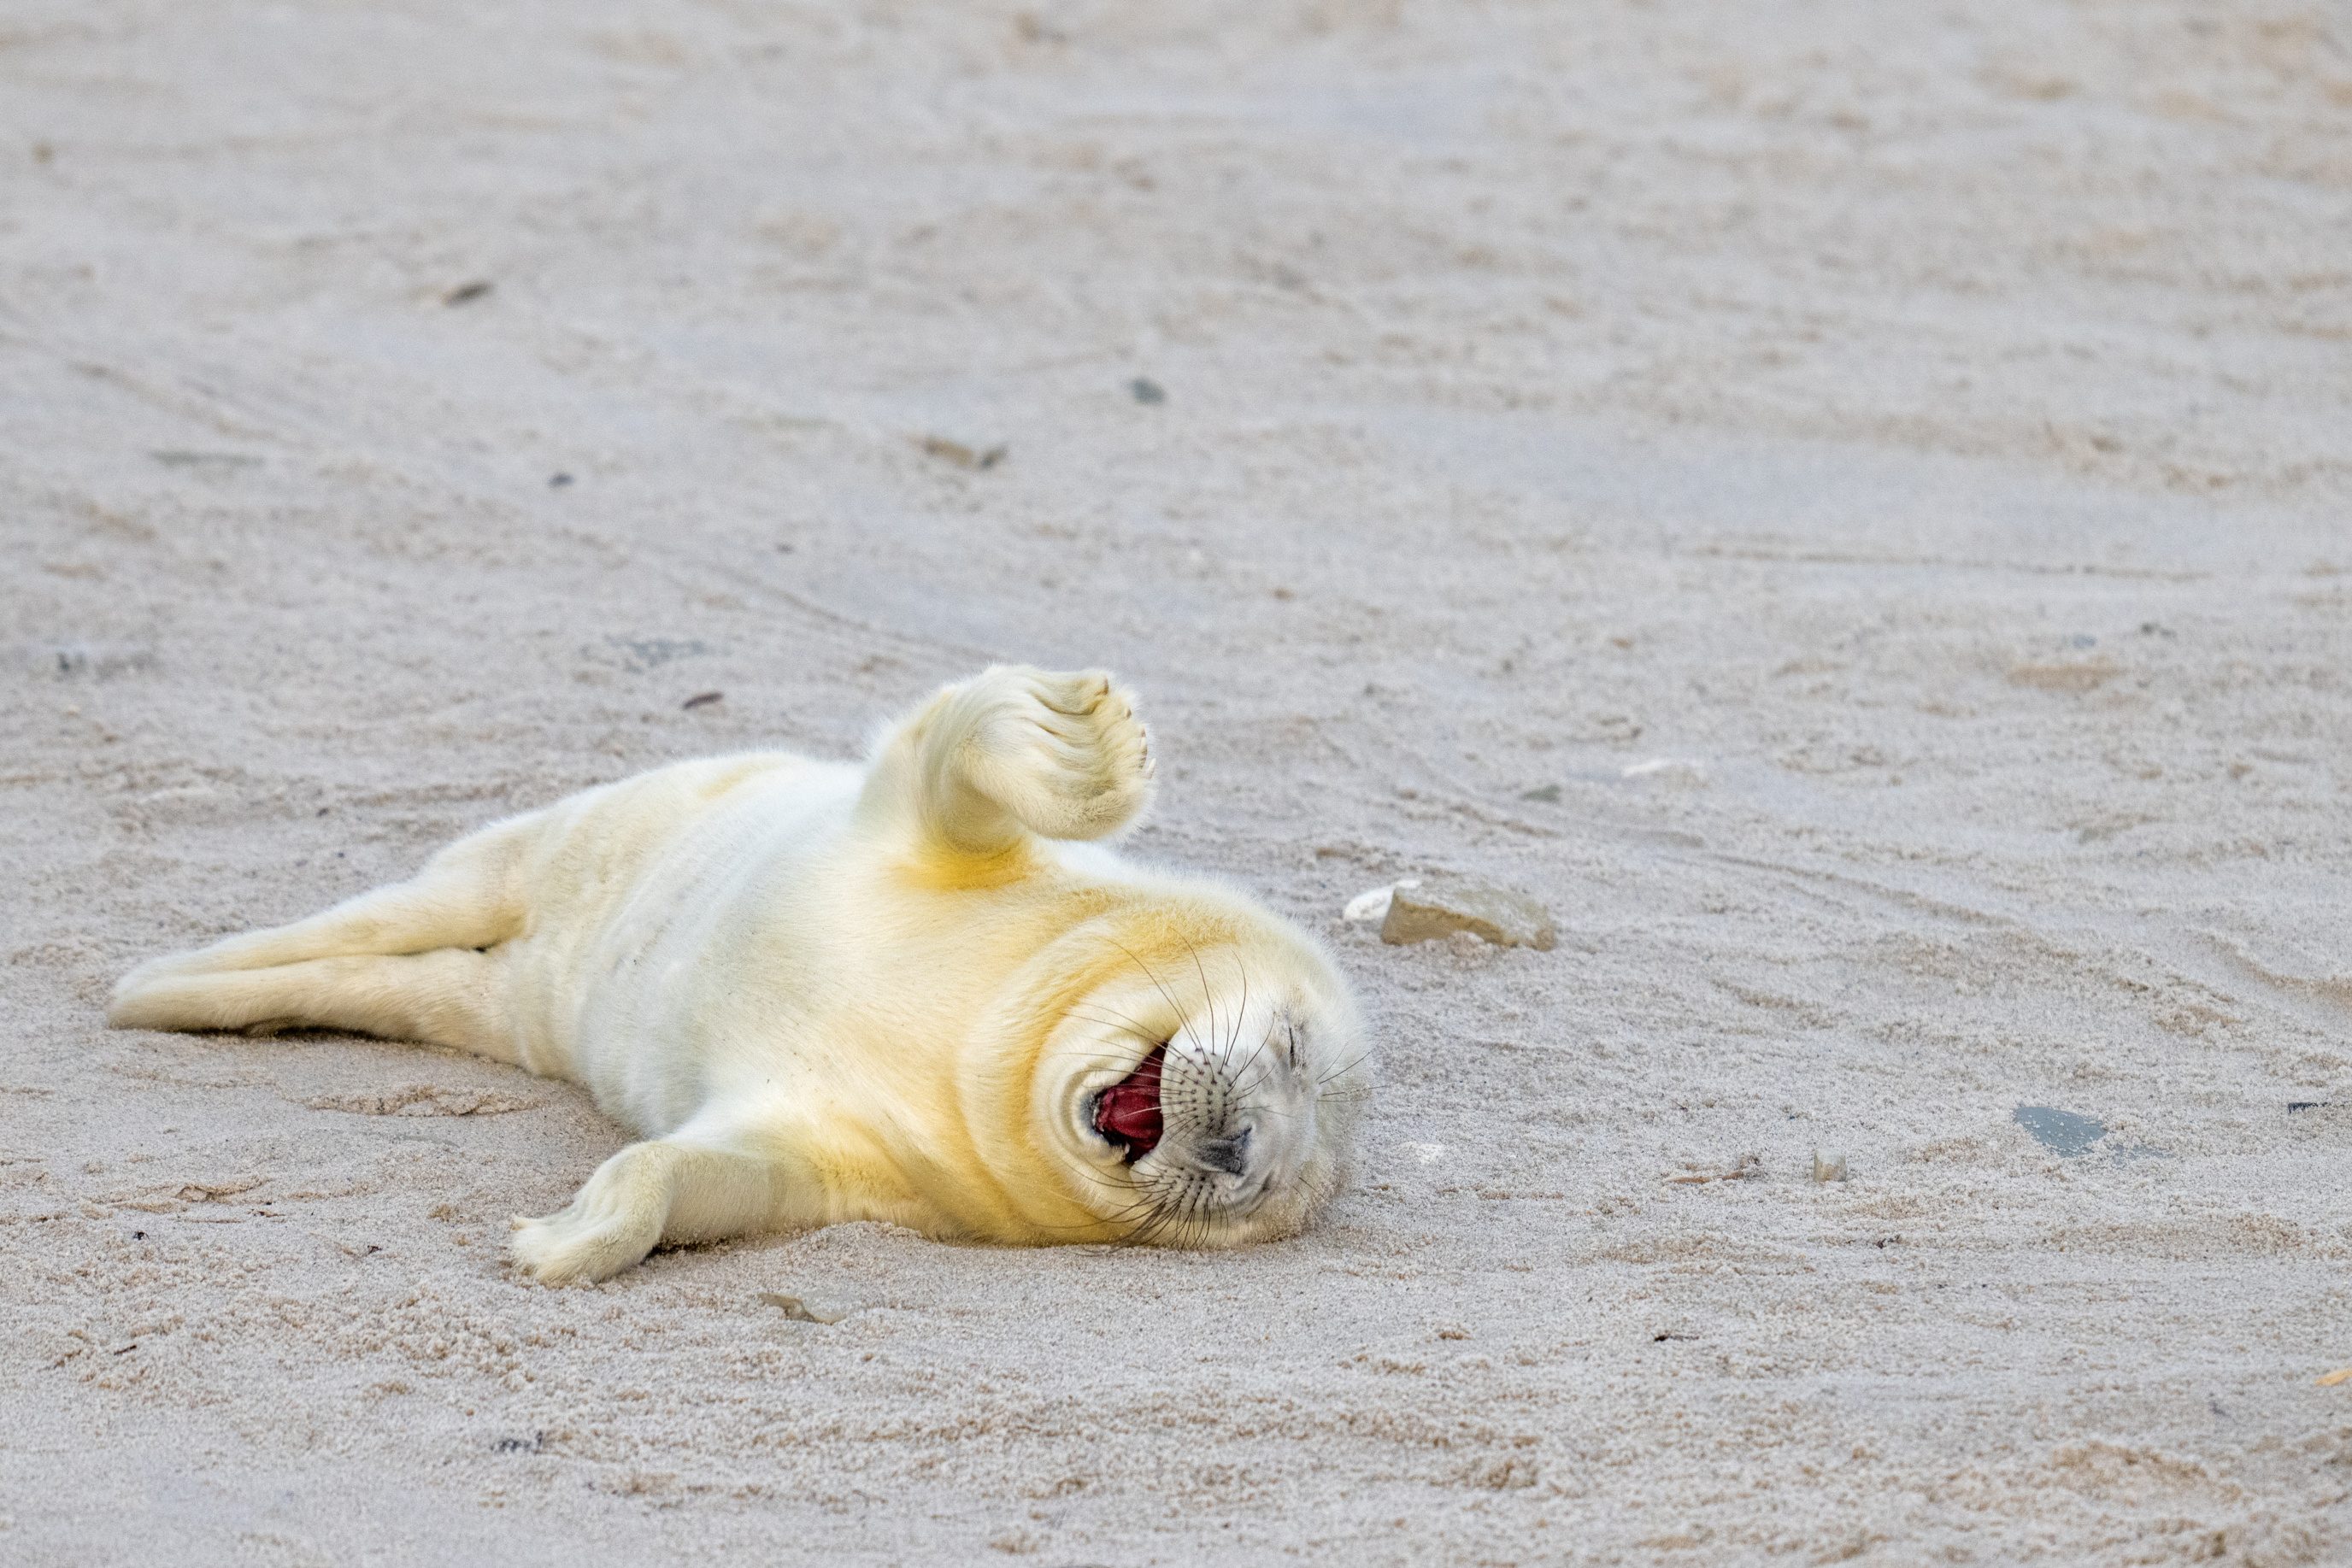 Uma foca está deitada na areia e parece estar rindo.